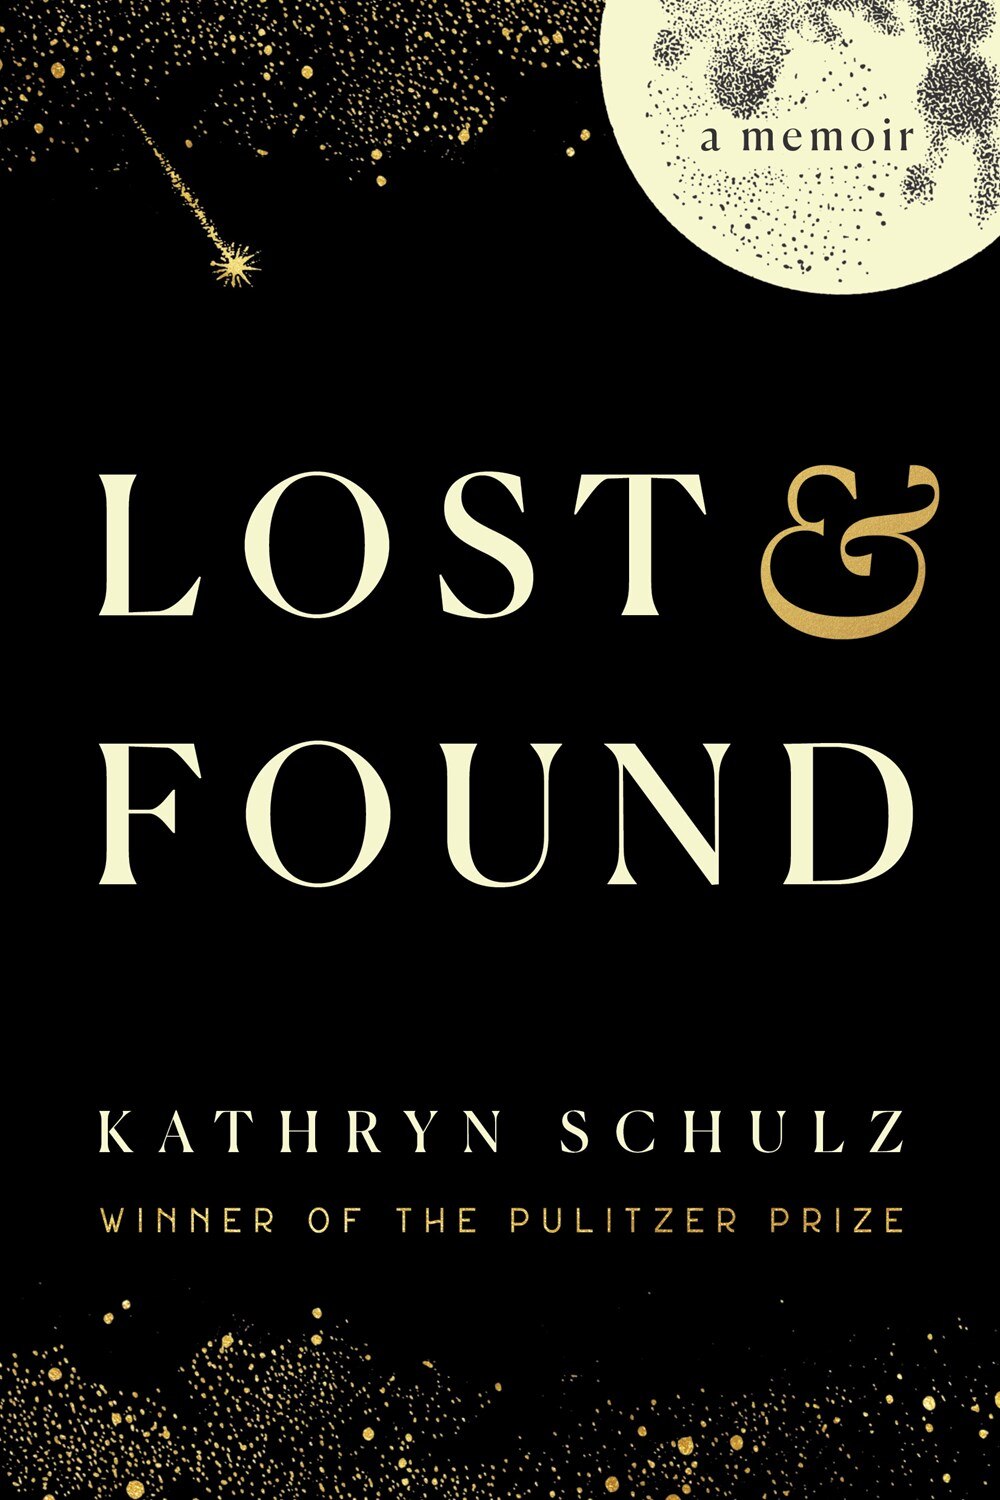 Lost & Found: A Memoir